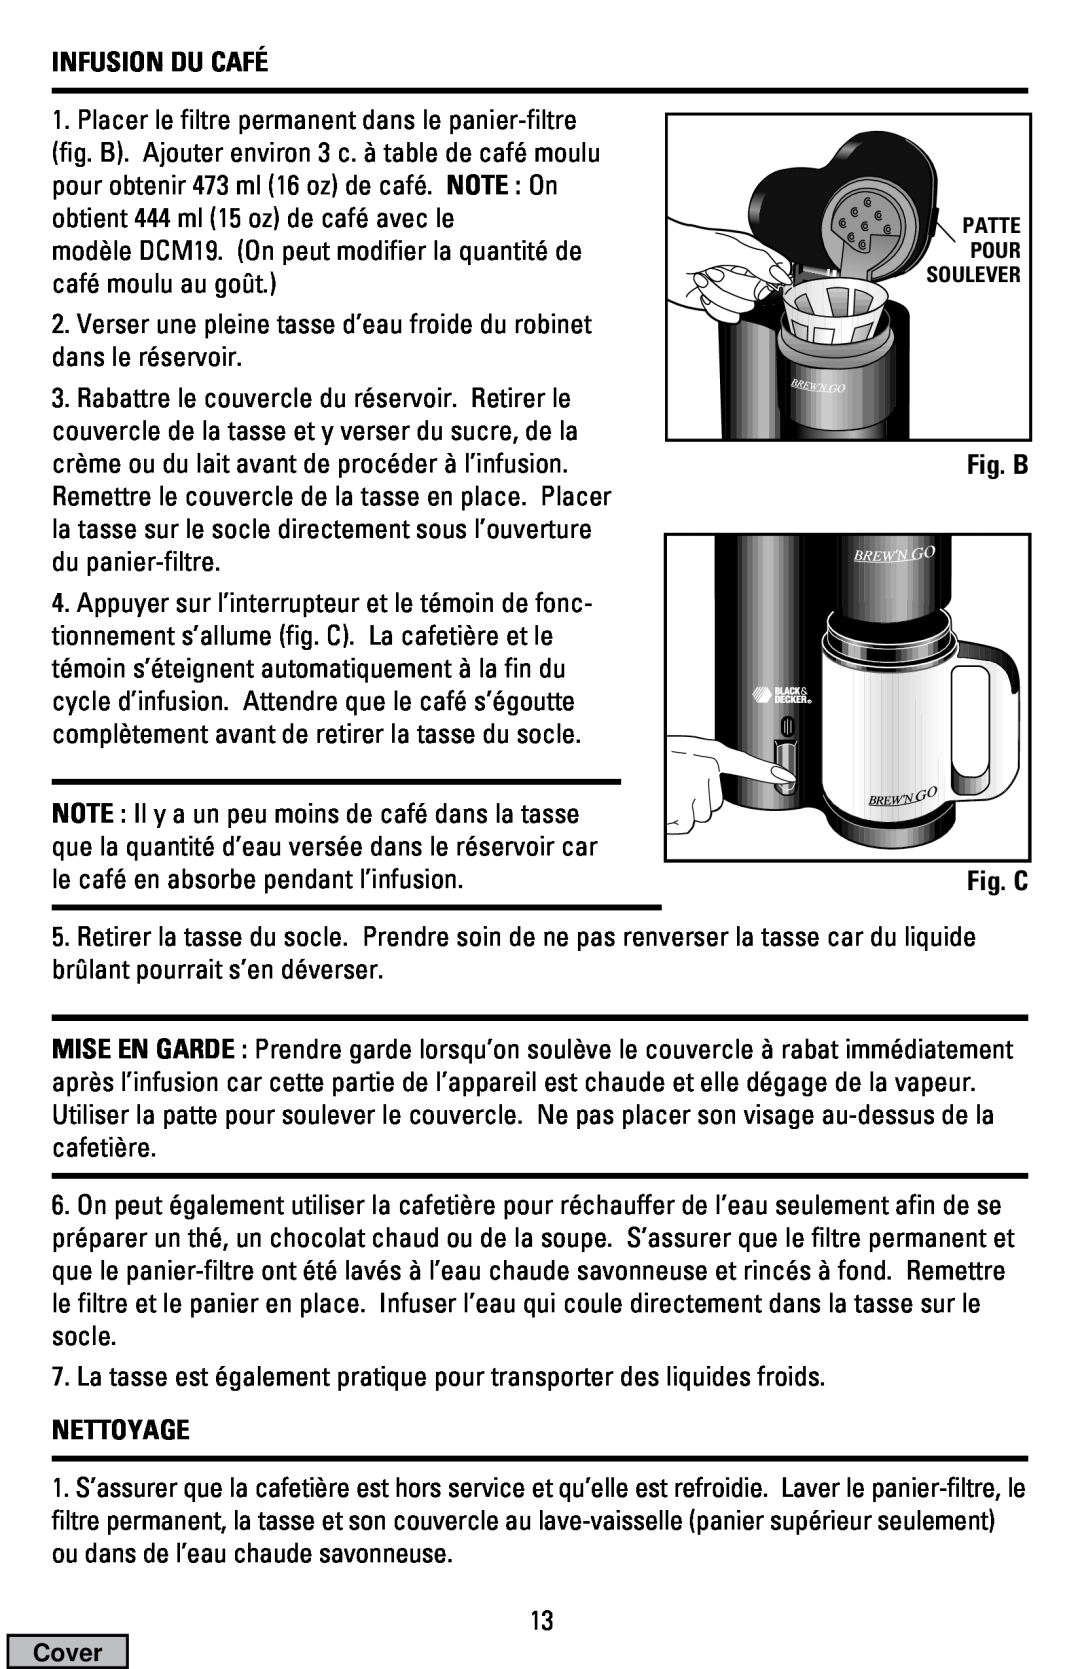 Black & Decker DCM16, DCM19 manual Infusion Du Café, Fig. B Fig. C, Nettoyage 